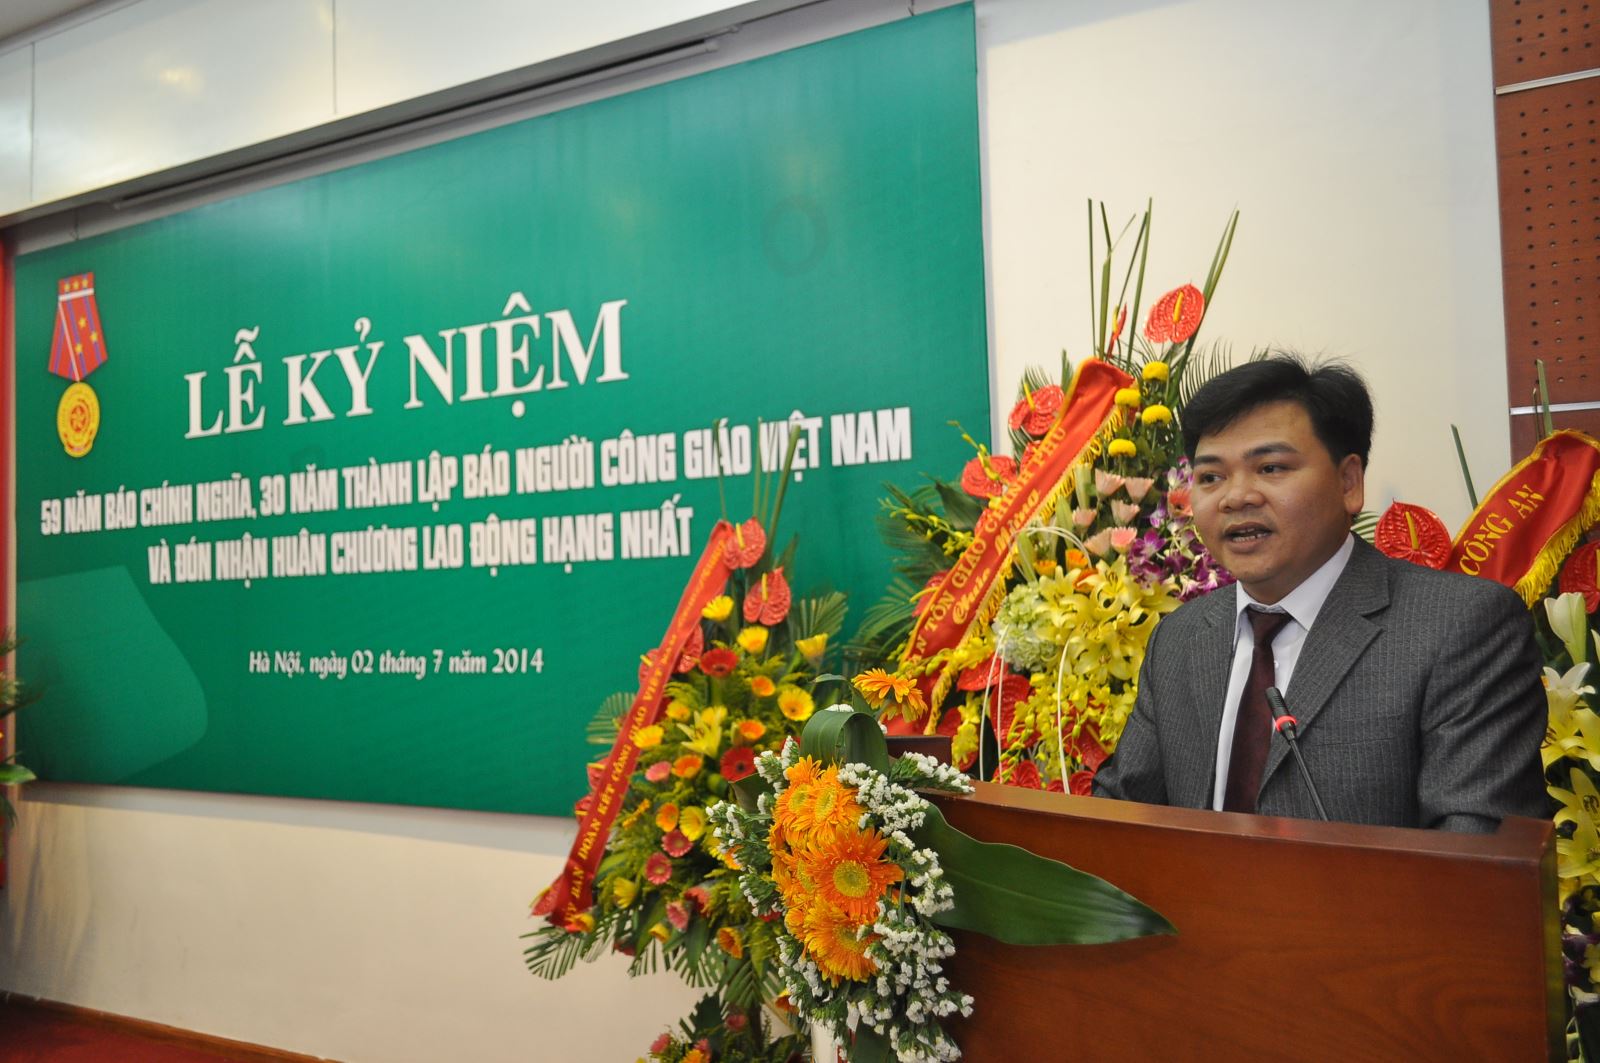 Ông Vũ Thành Nam - Tổng Biên tập Báo NCGVN phát biểu tại lễ kỷ niệm 59 báo Chính nghĩa, 30 năm thành lập Báo NCGVN. Ảnh: Phạm Cường